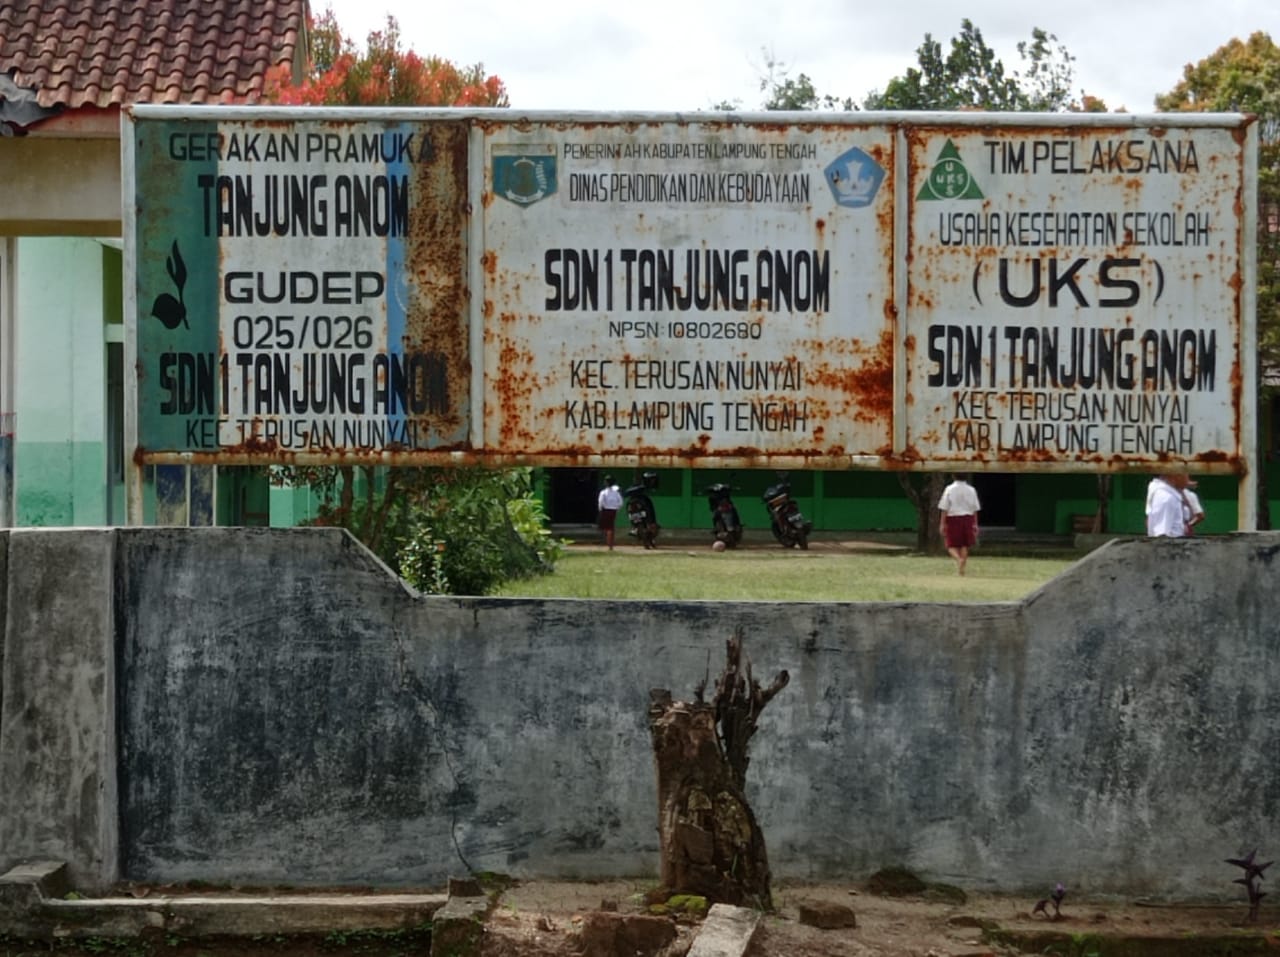 Sekolah Dasar Negeri 1 Tanjung Bertahun-tahun Tidak Memiliki Sertifikat, Surat Yang Adapun Hilang